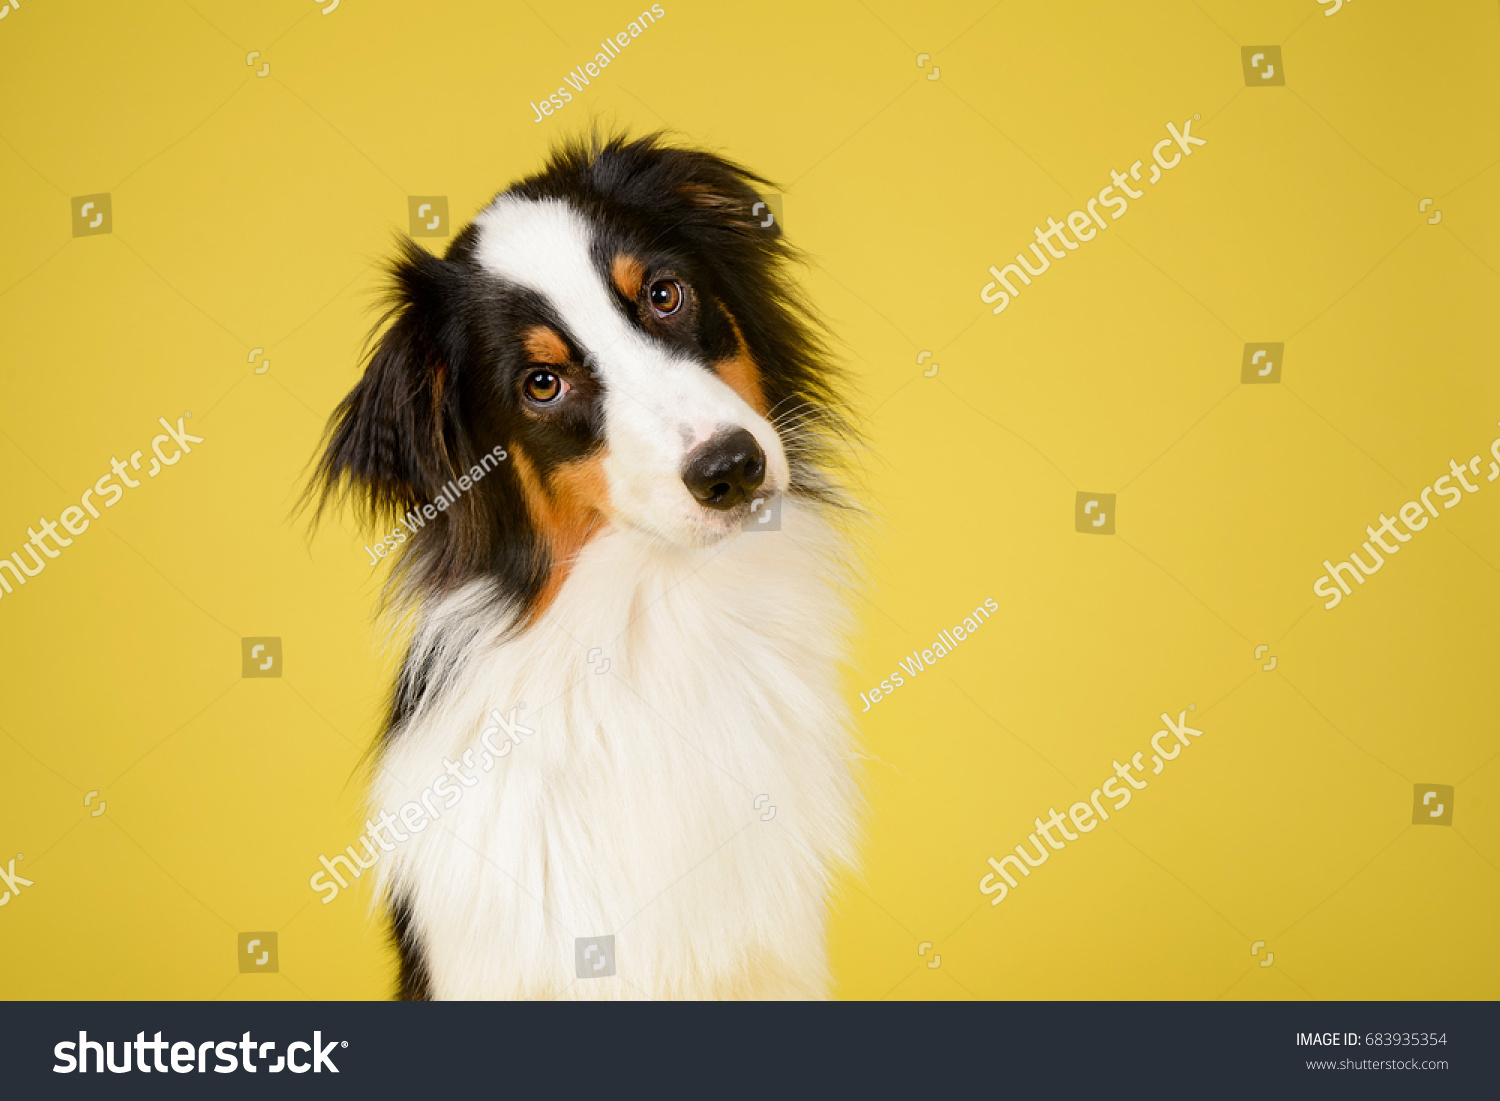 Australian Shepherd Dog in Studio on Yellow Background #683935354